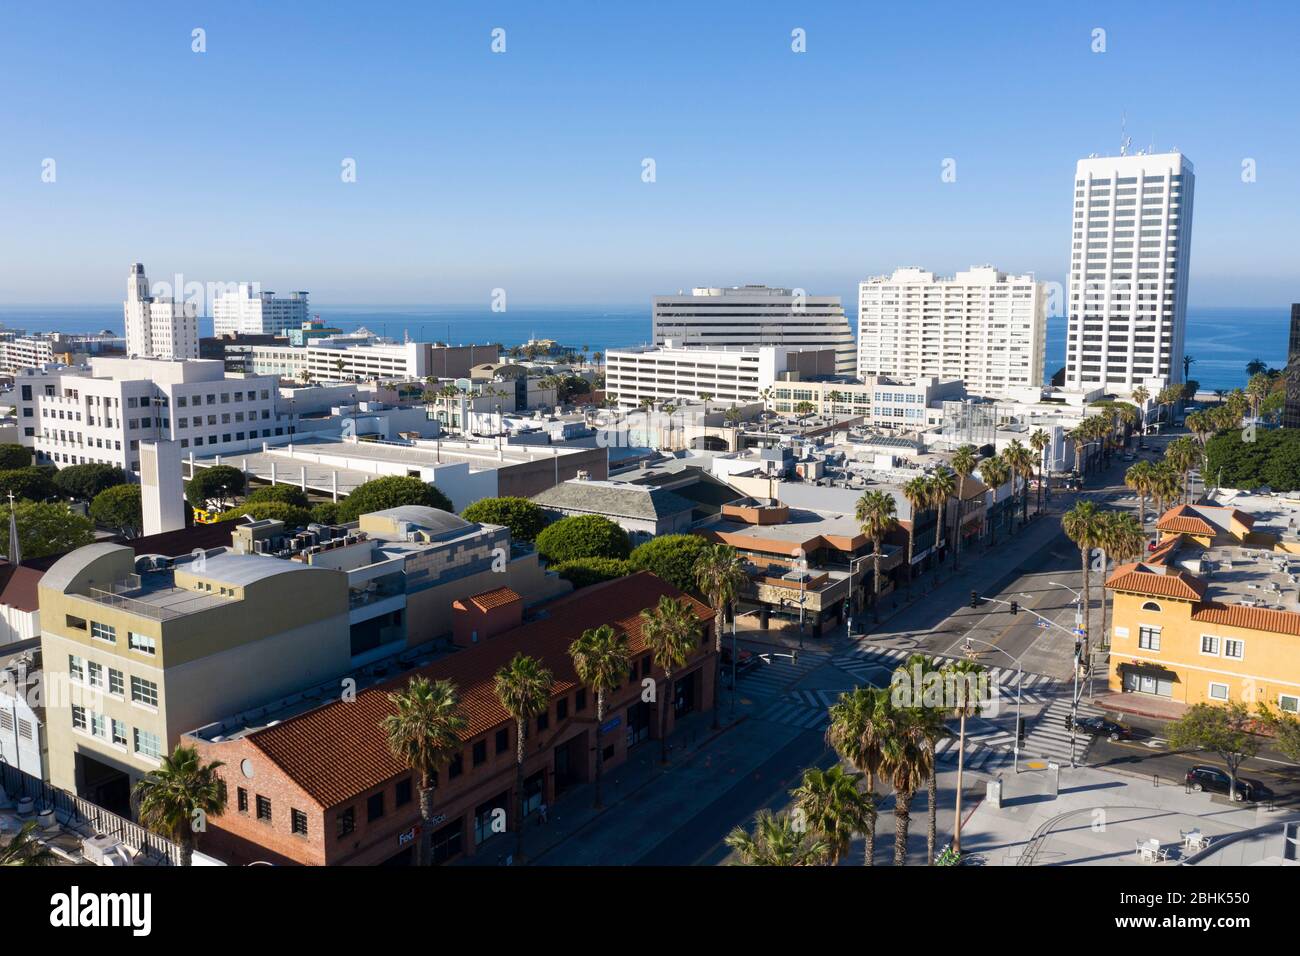 Vue aérienne au-dessus du centre-ville de Santa Monica Californie sur l'océan Pacifique Banque D'Images